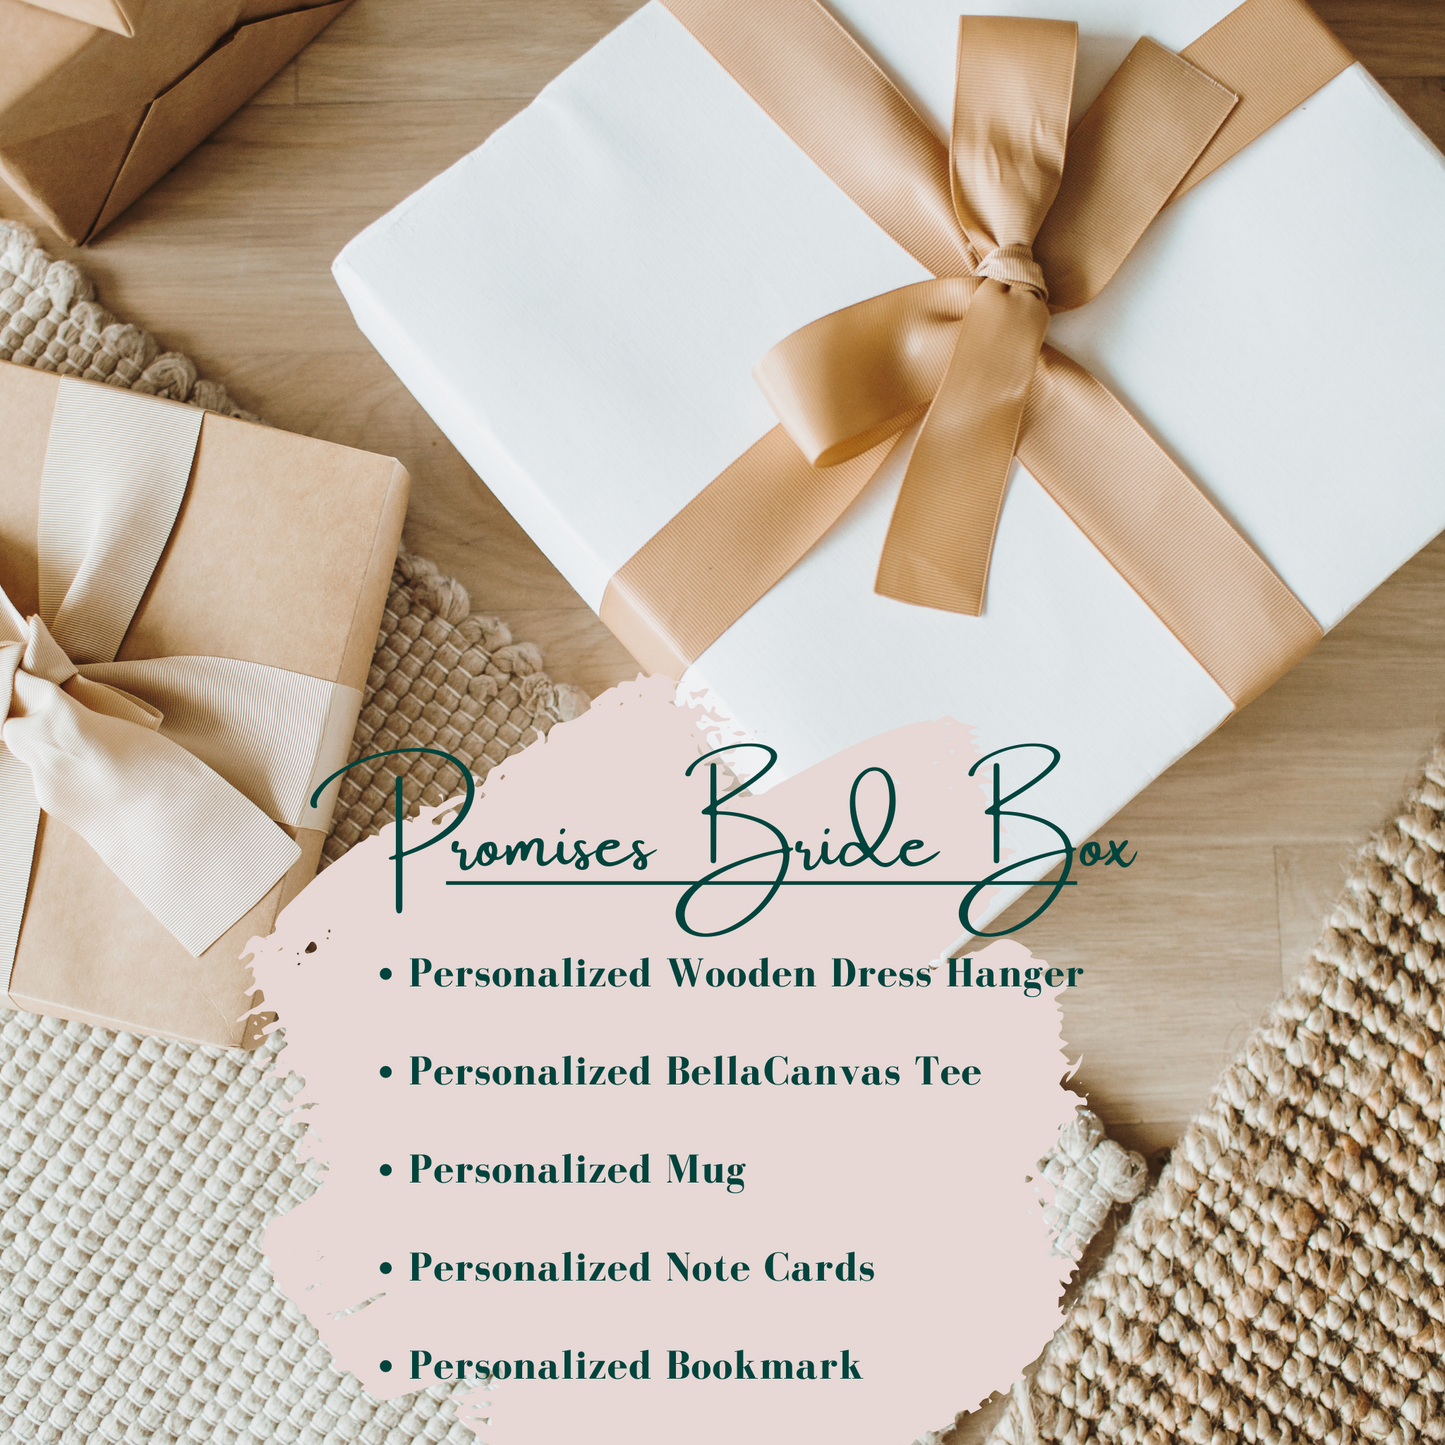 Promises Bride Box